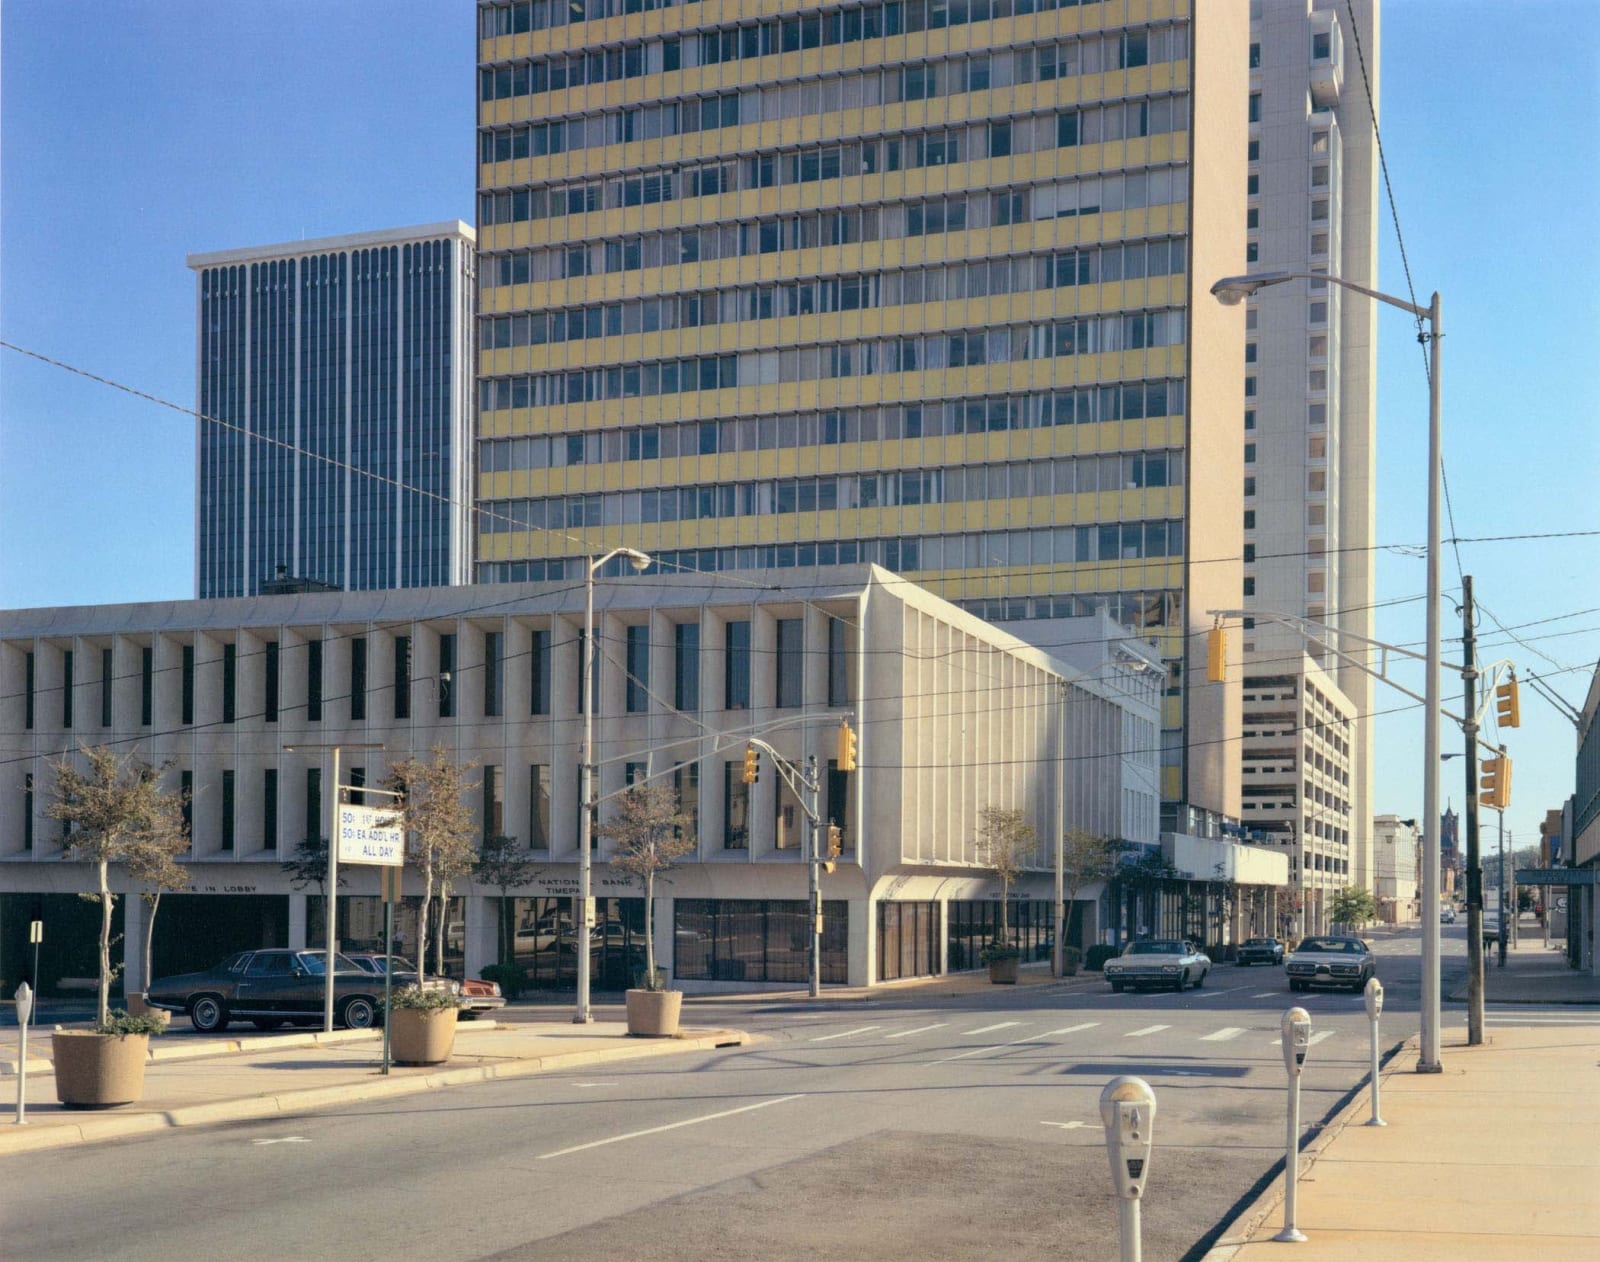 Stephen Shore, Center Street and West Third Street, Little Rock, Arkansas, October 5, 1974